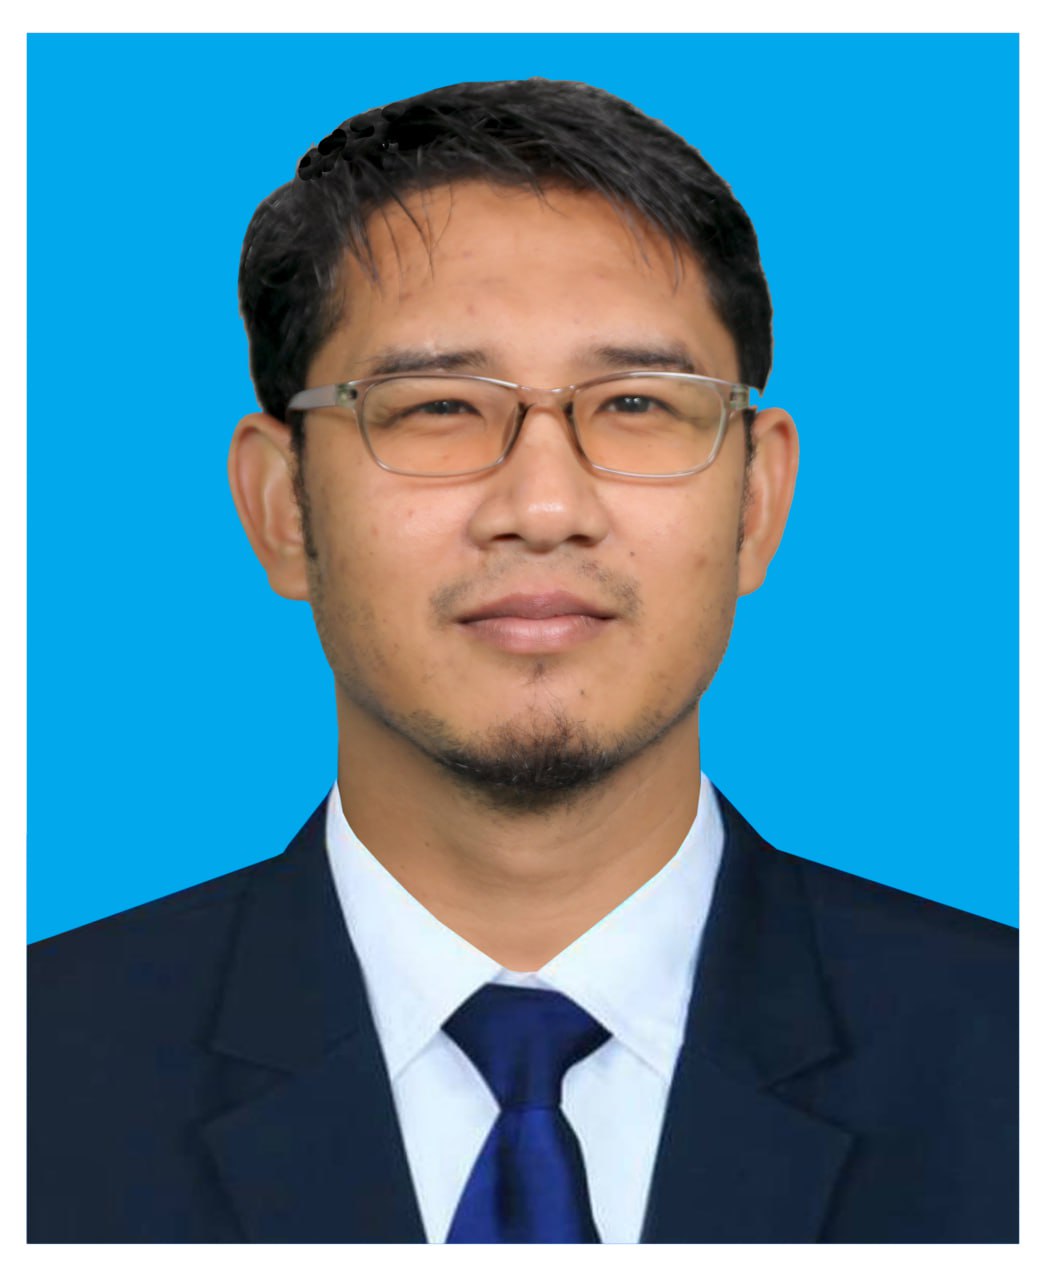 Mohd Sally Idzwan bin Mohd Ali